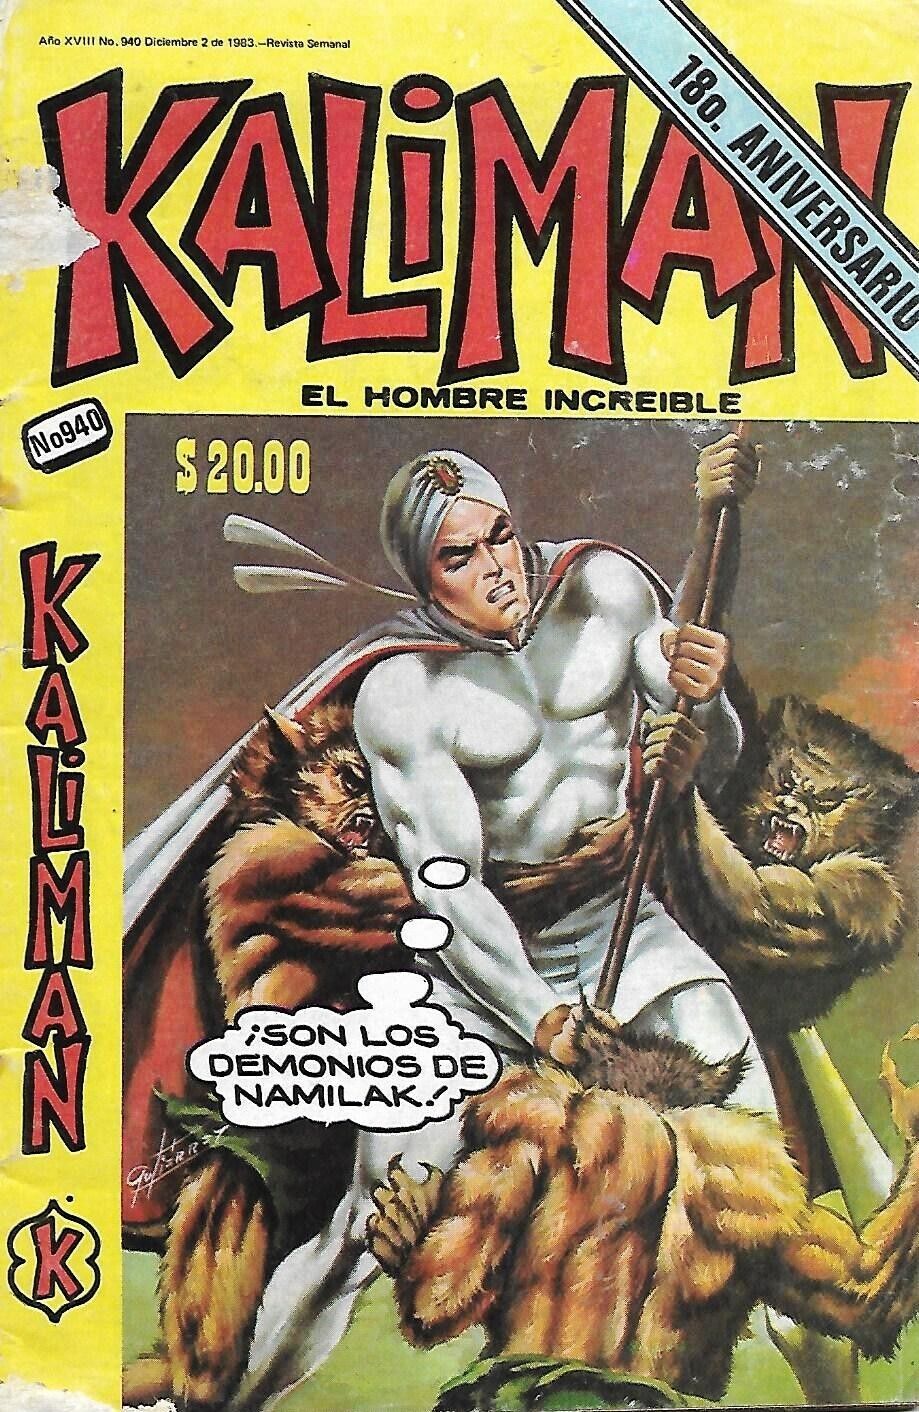 Kaliman El Hombre Increible #940 - Diciembre 2, 1983 - Mexico